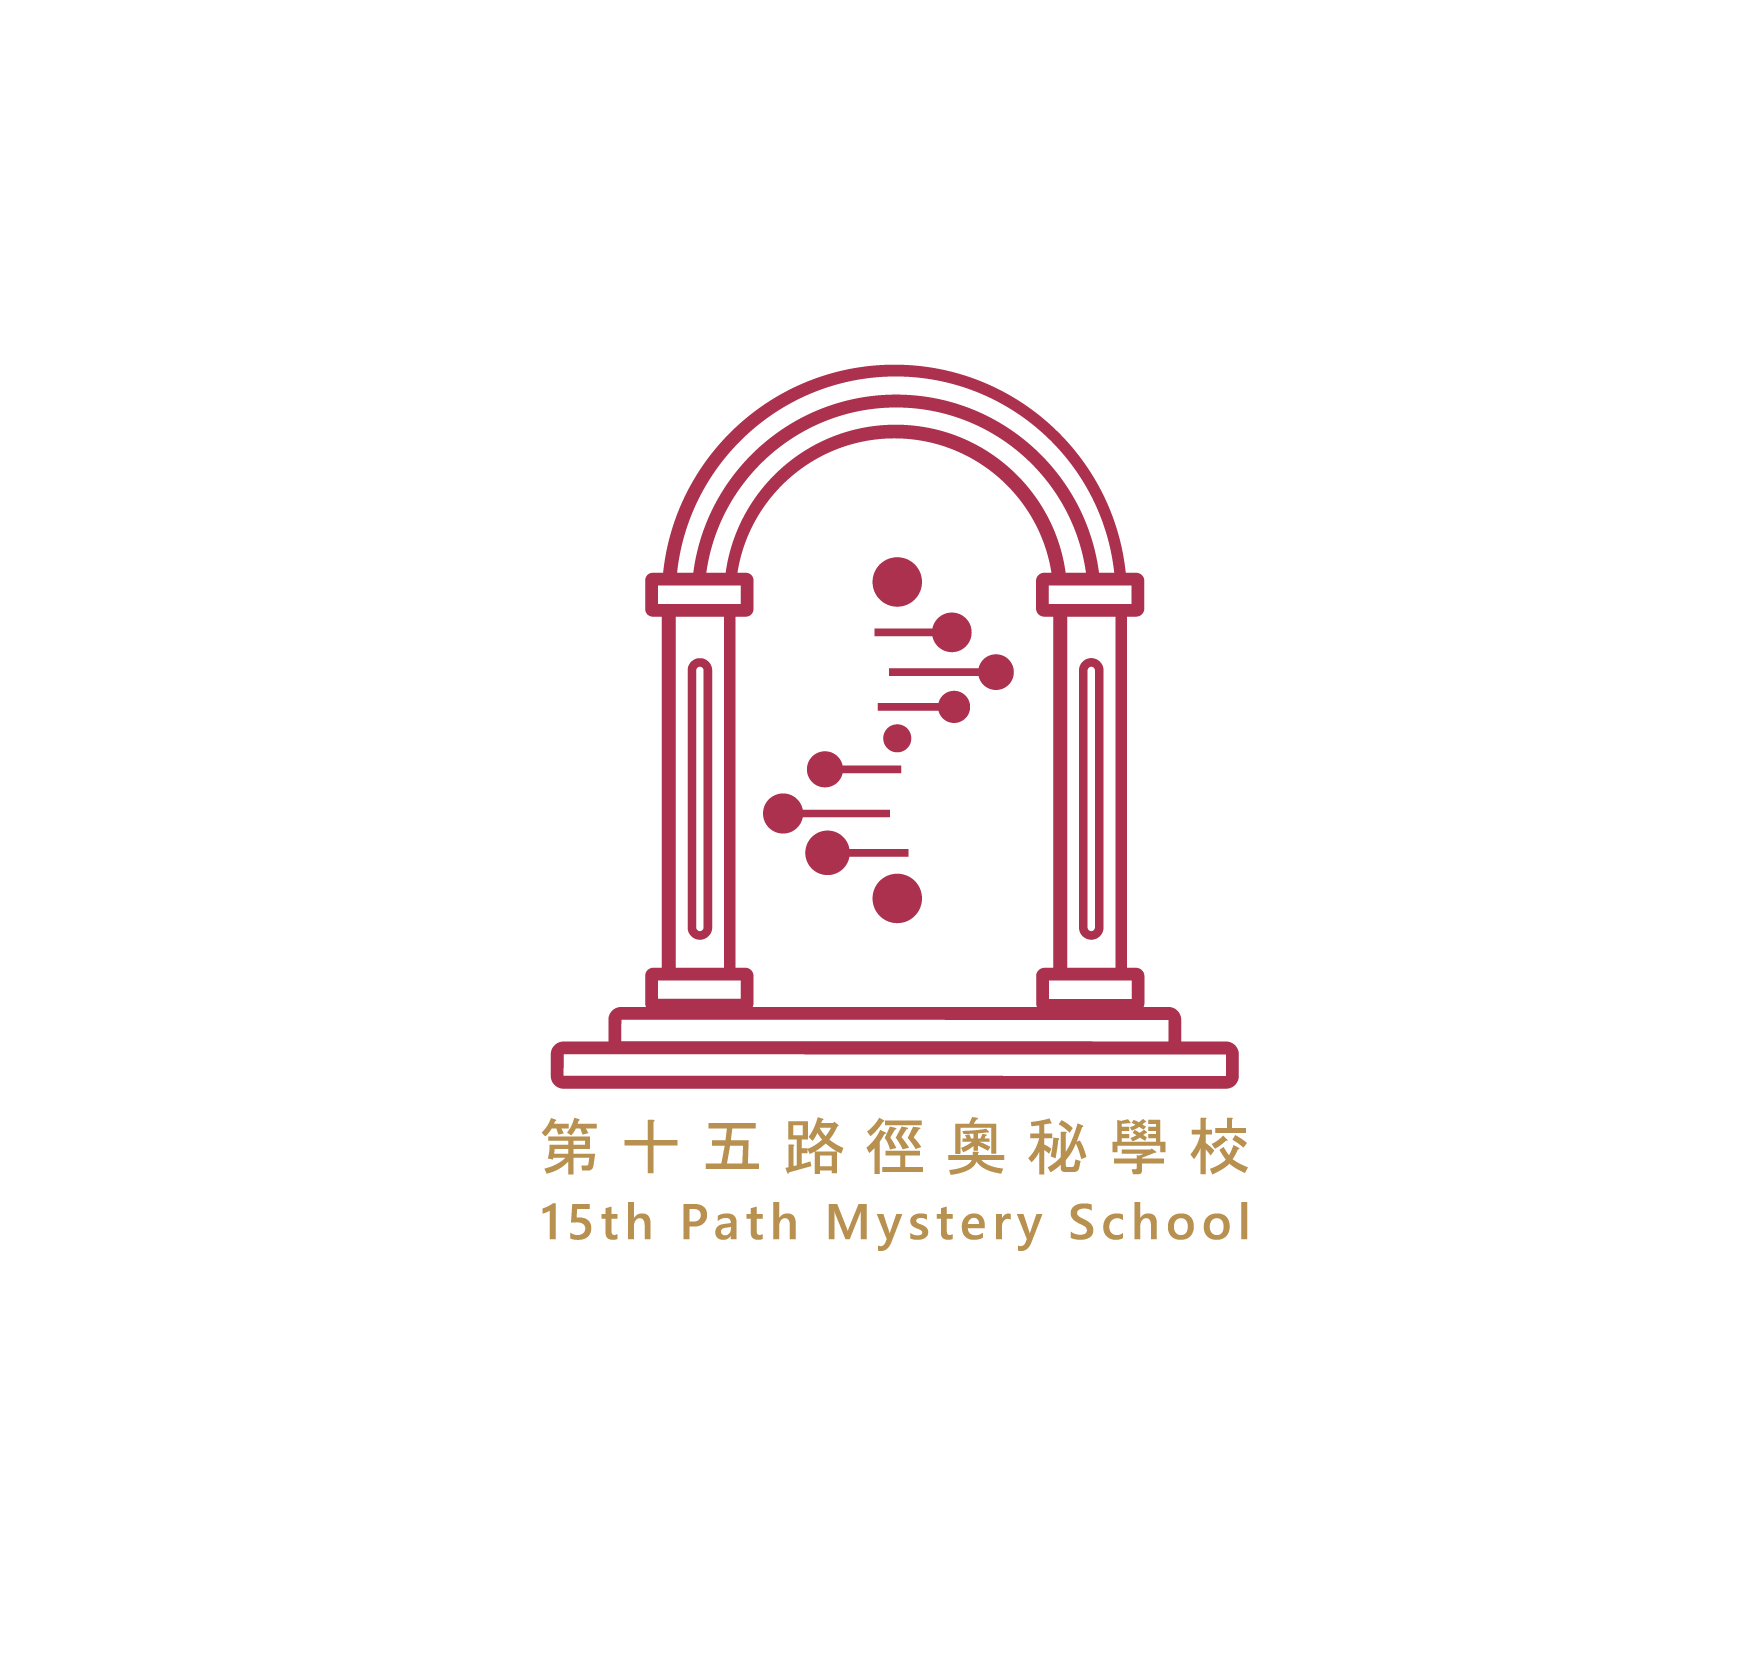 15th Path Mystery School